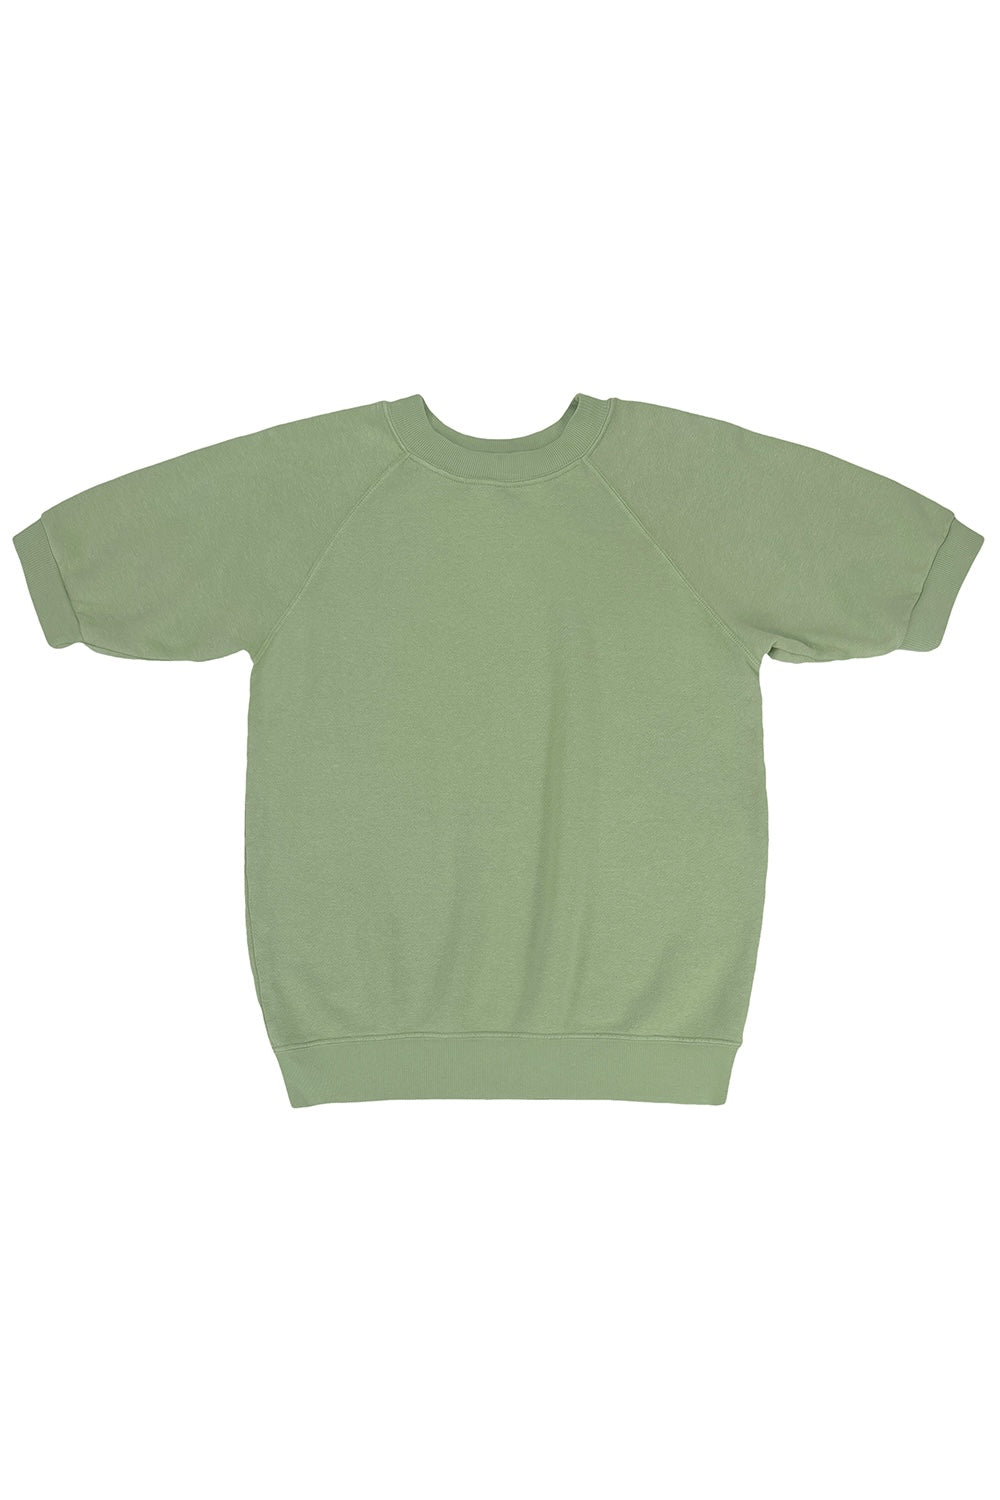 Short Sleeve Raglan Fleece Sweatshirt | Jungmaven Hemp Clothing & Accessories / Color: Pistachio